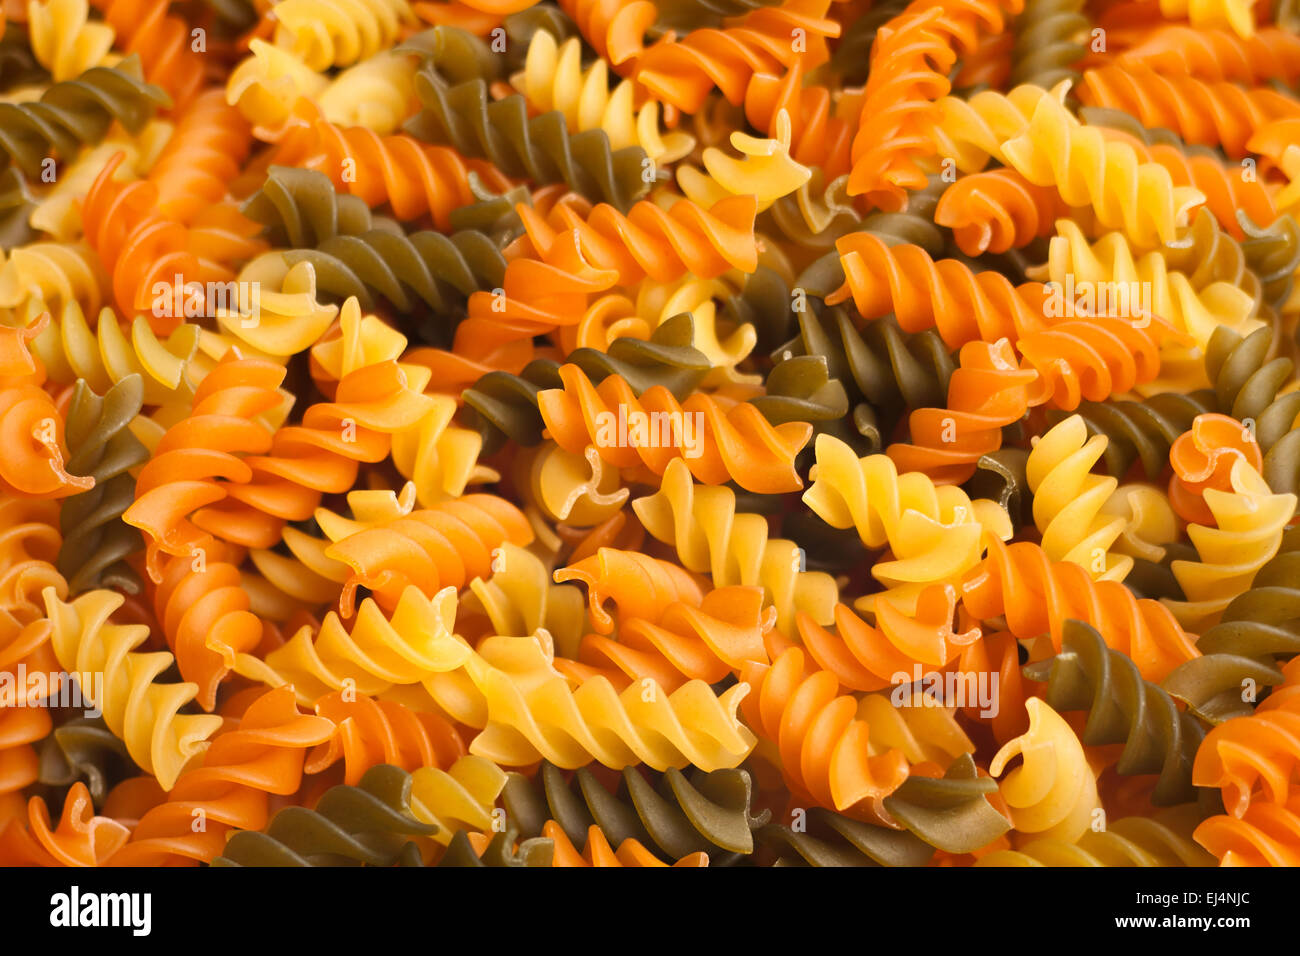 pasta closeup Stock Photo